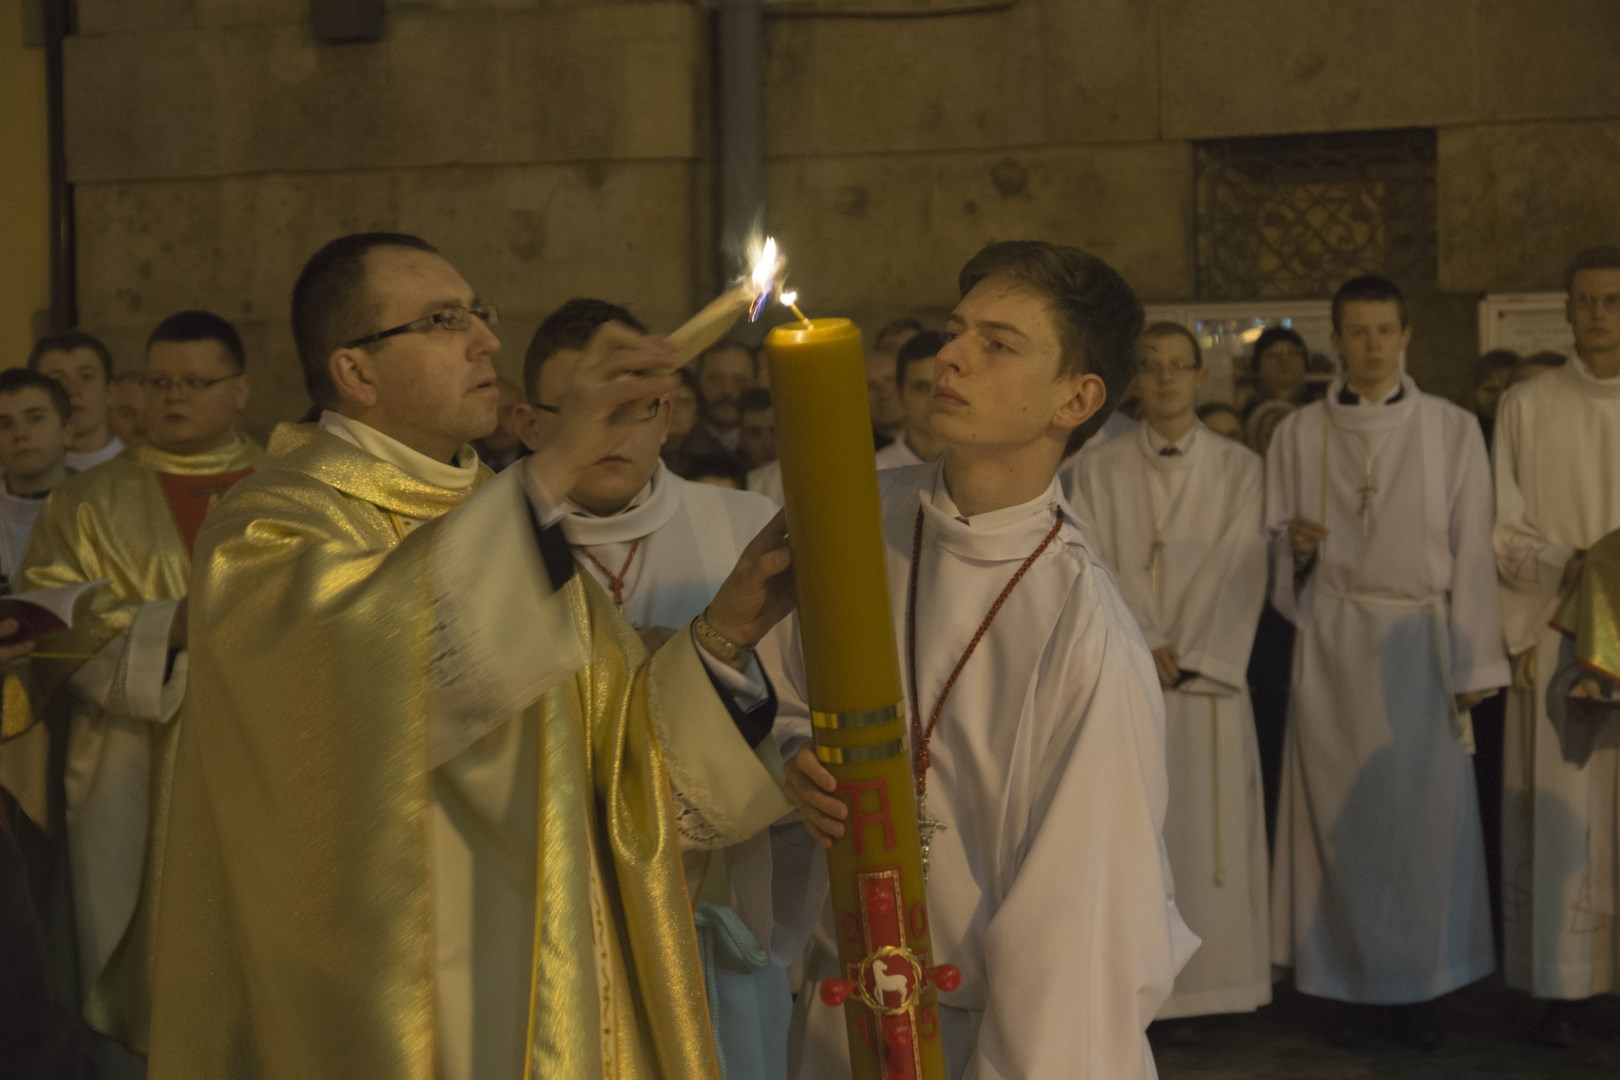 2015-04-04 - Wielka Sobota, Liturgia Wigilii Paschalnej